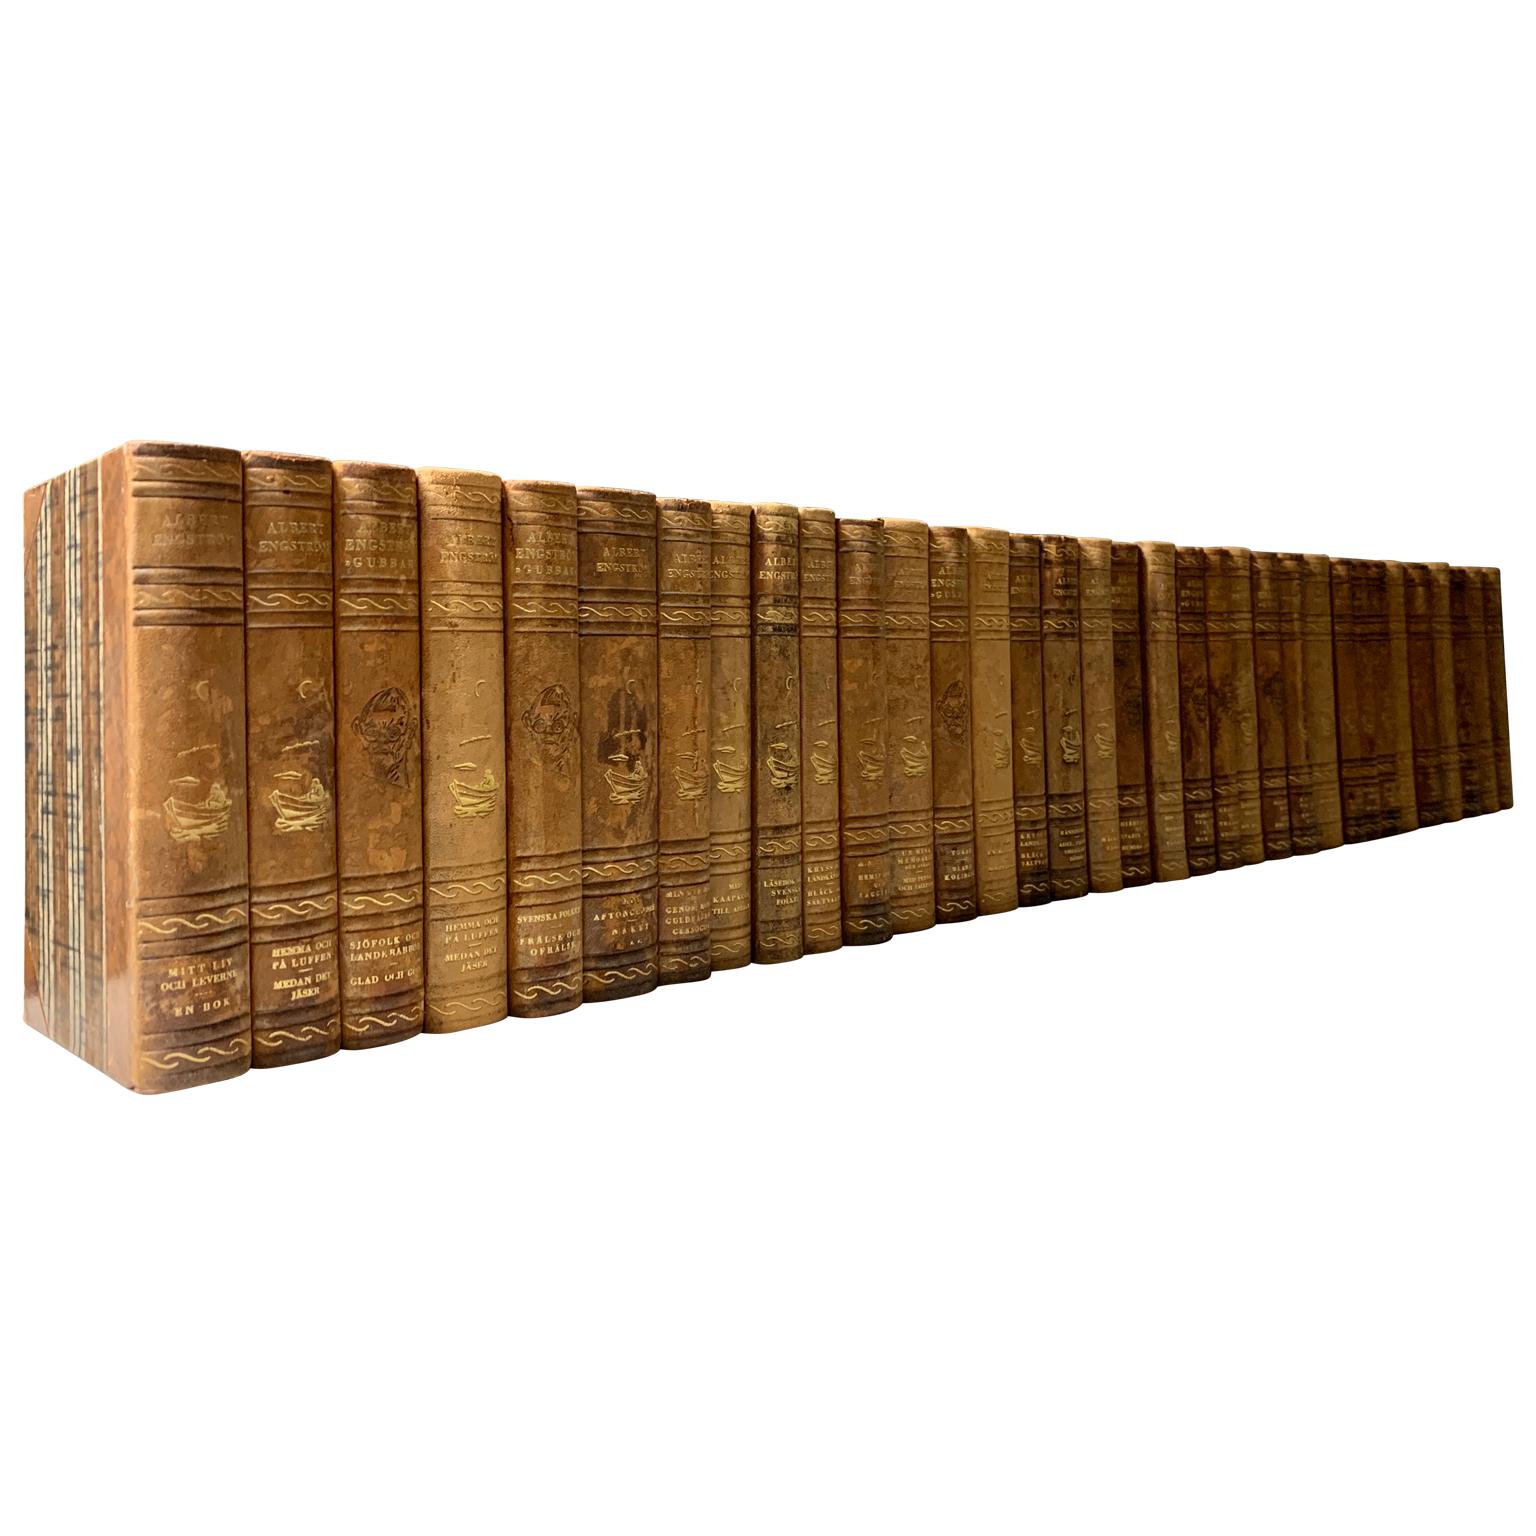 Eine Sammlung von 34 schwedischen dekorativen, antiken, in Leder gebundenen Bibliotheksbüchern.
Die Bücher sind in ledergebundene Einbände mit einer Auswahl an warmen Farbtönen und Blattgoldprägung gehüllt.
Die horizontale Abmessung der Collection'S